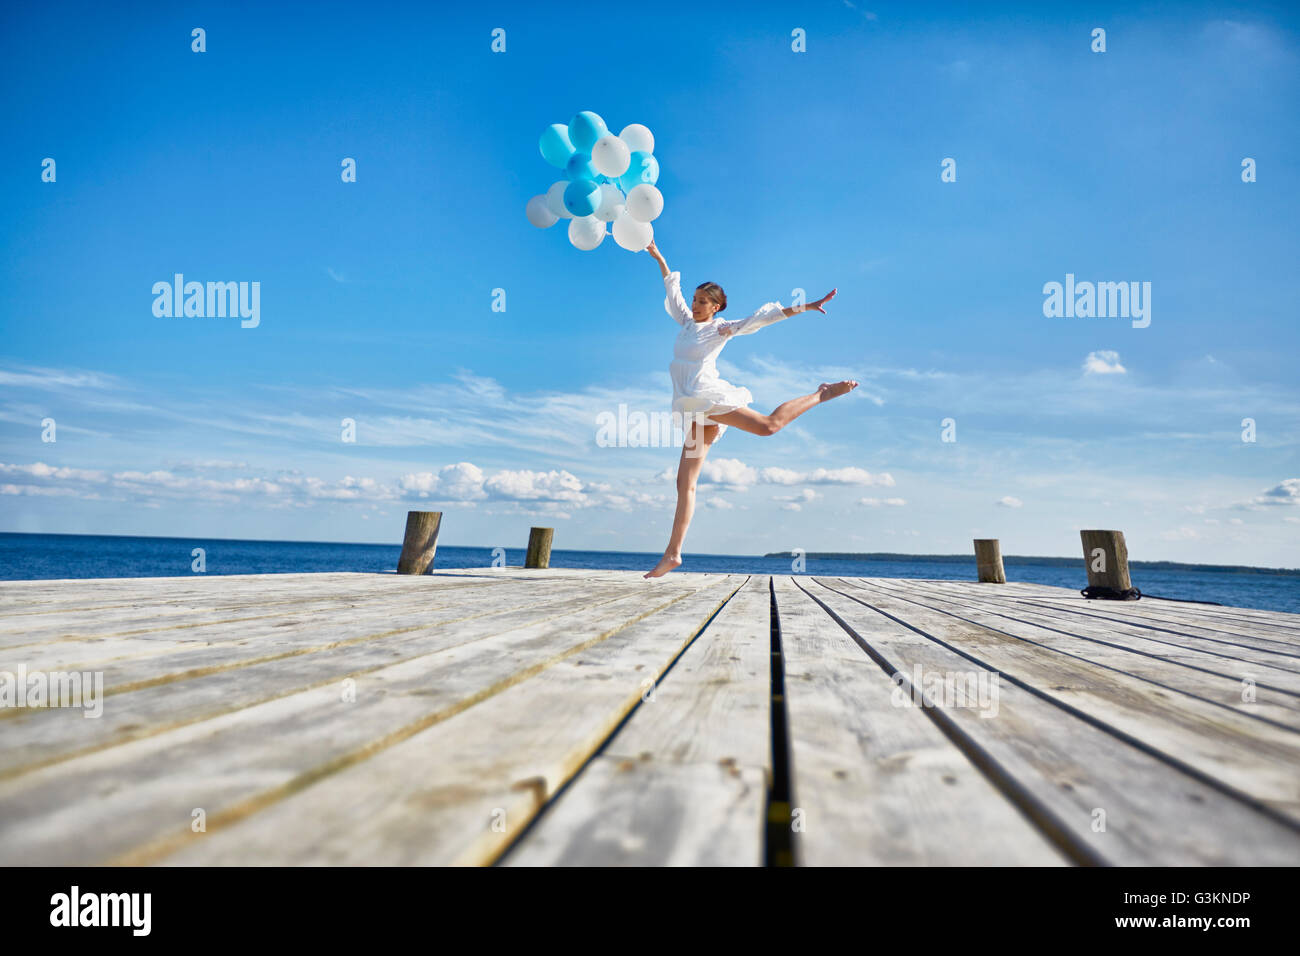 Jeune femme dansant sur jetée en bois, holding bunch of balloons Banque D'Images